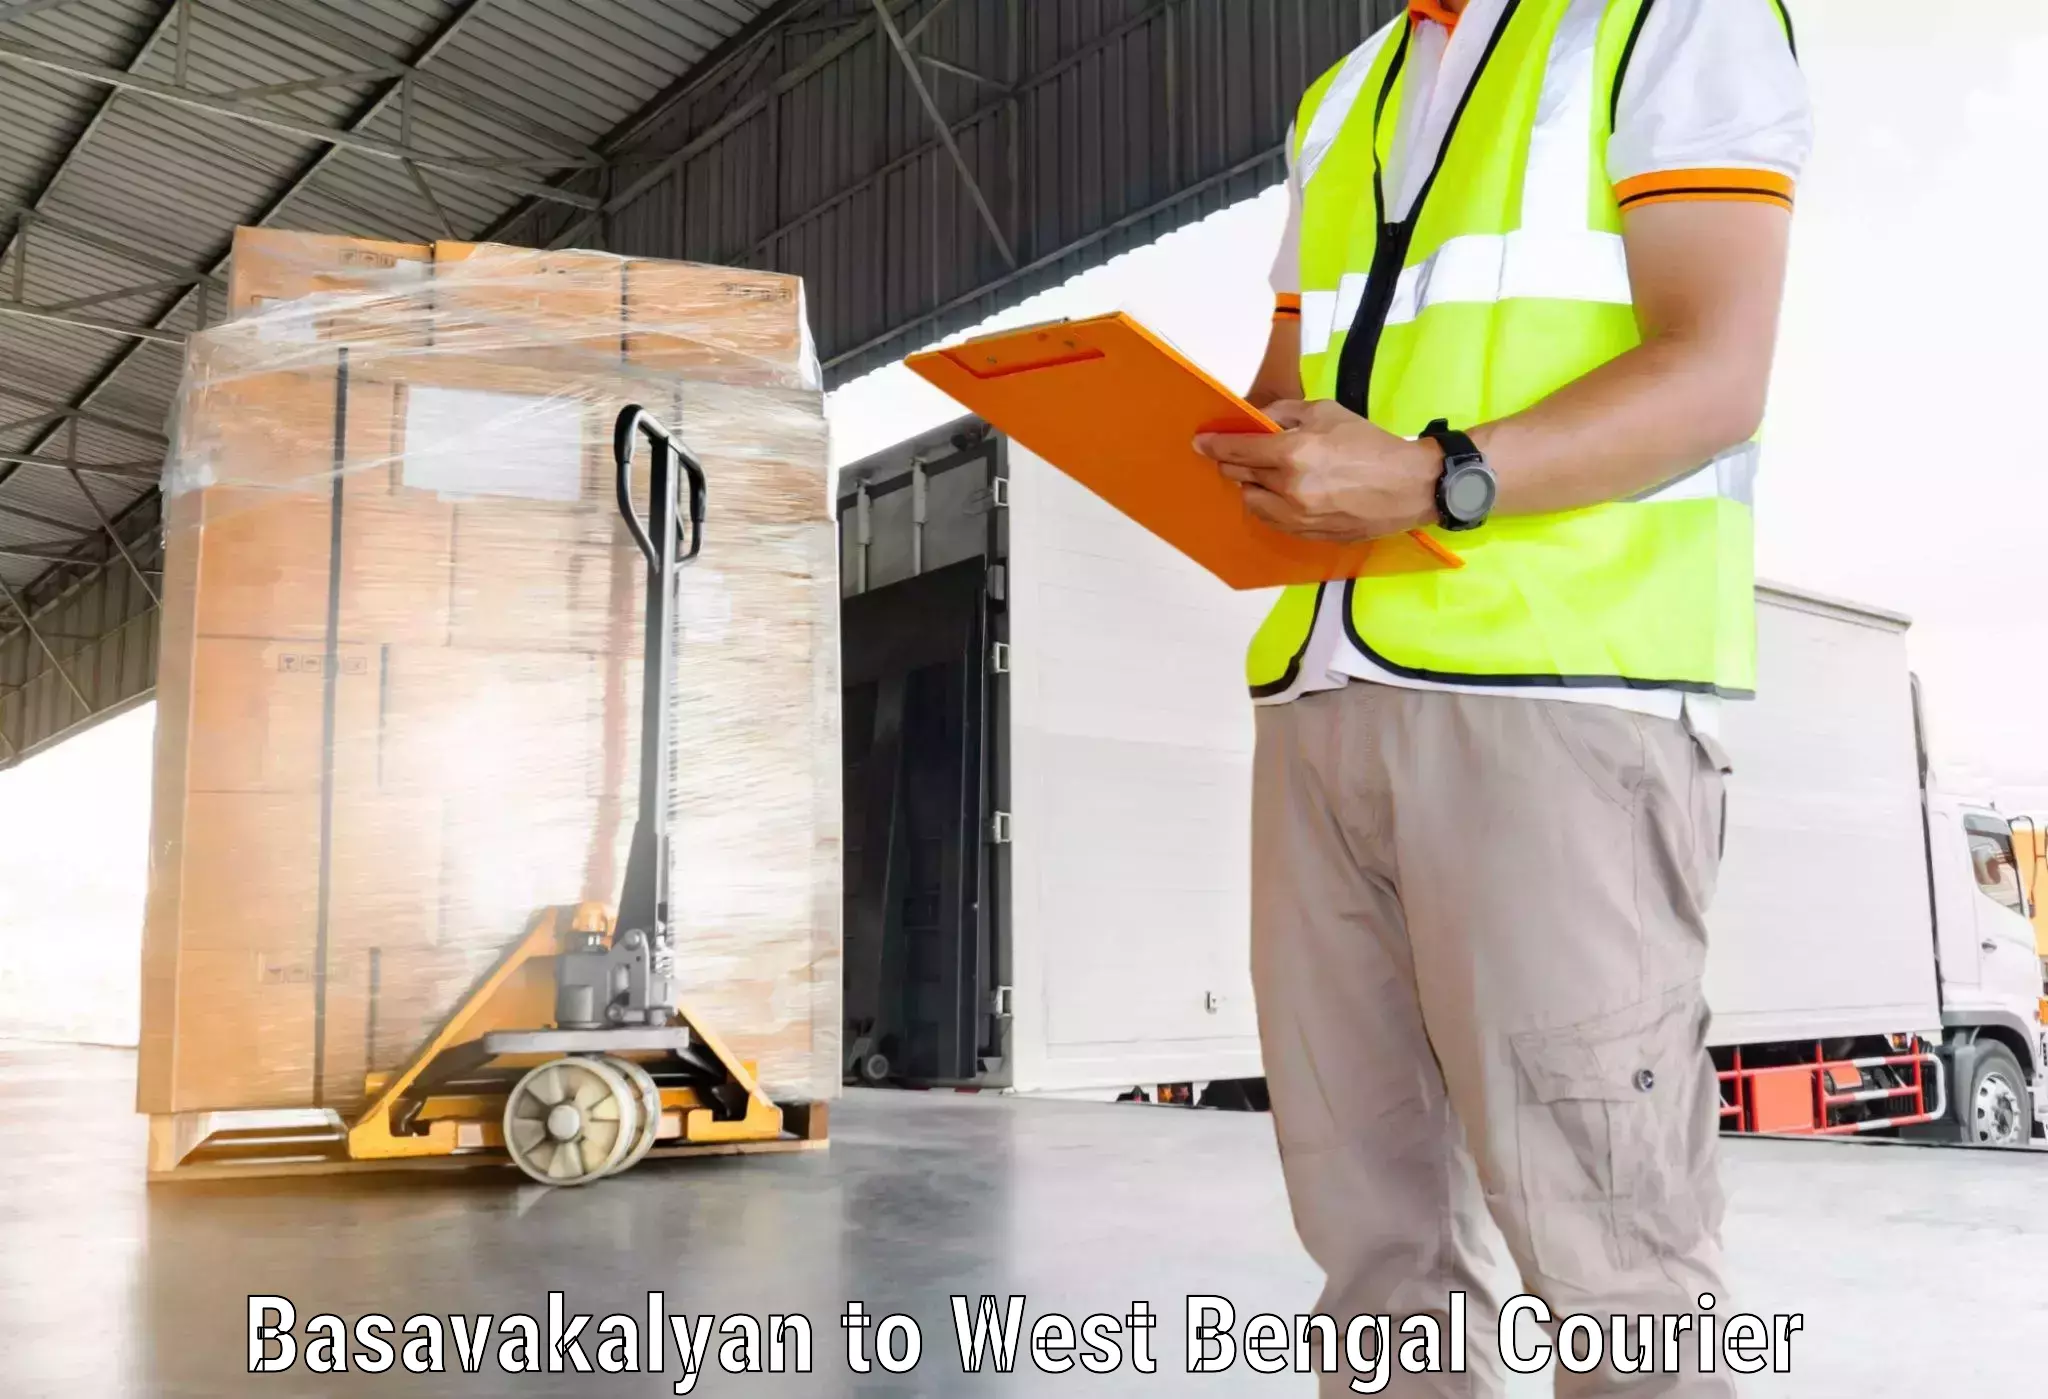 High-speed delivery Basavakalyan to Mungpoo